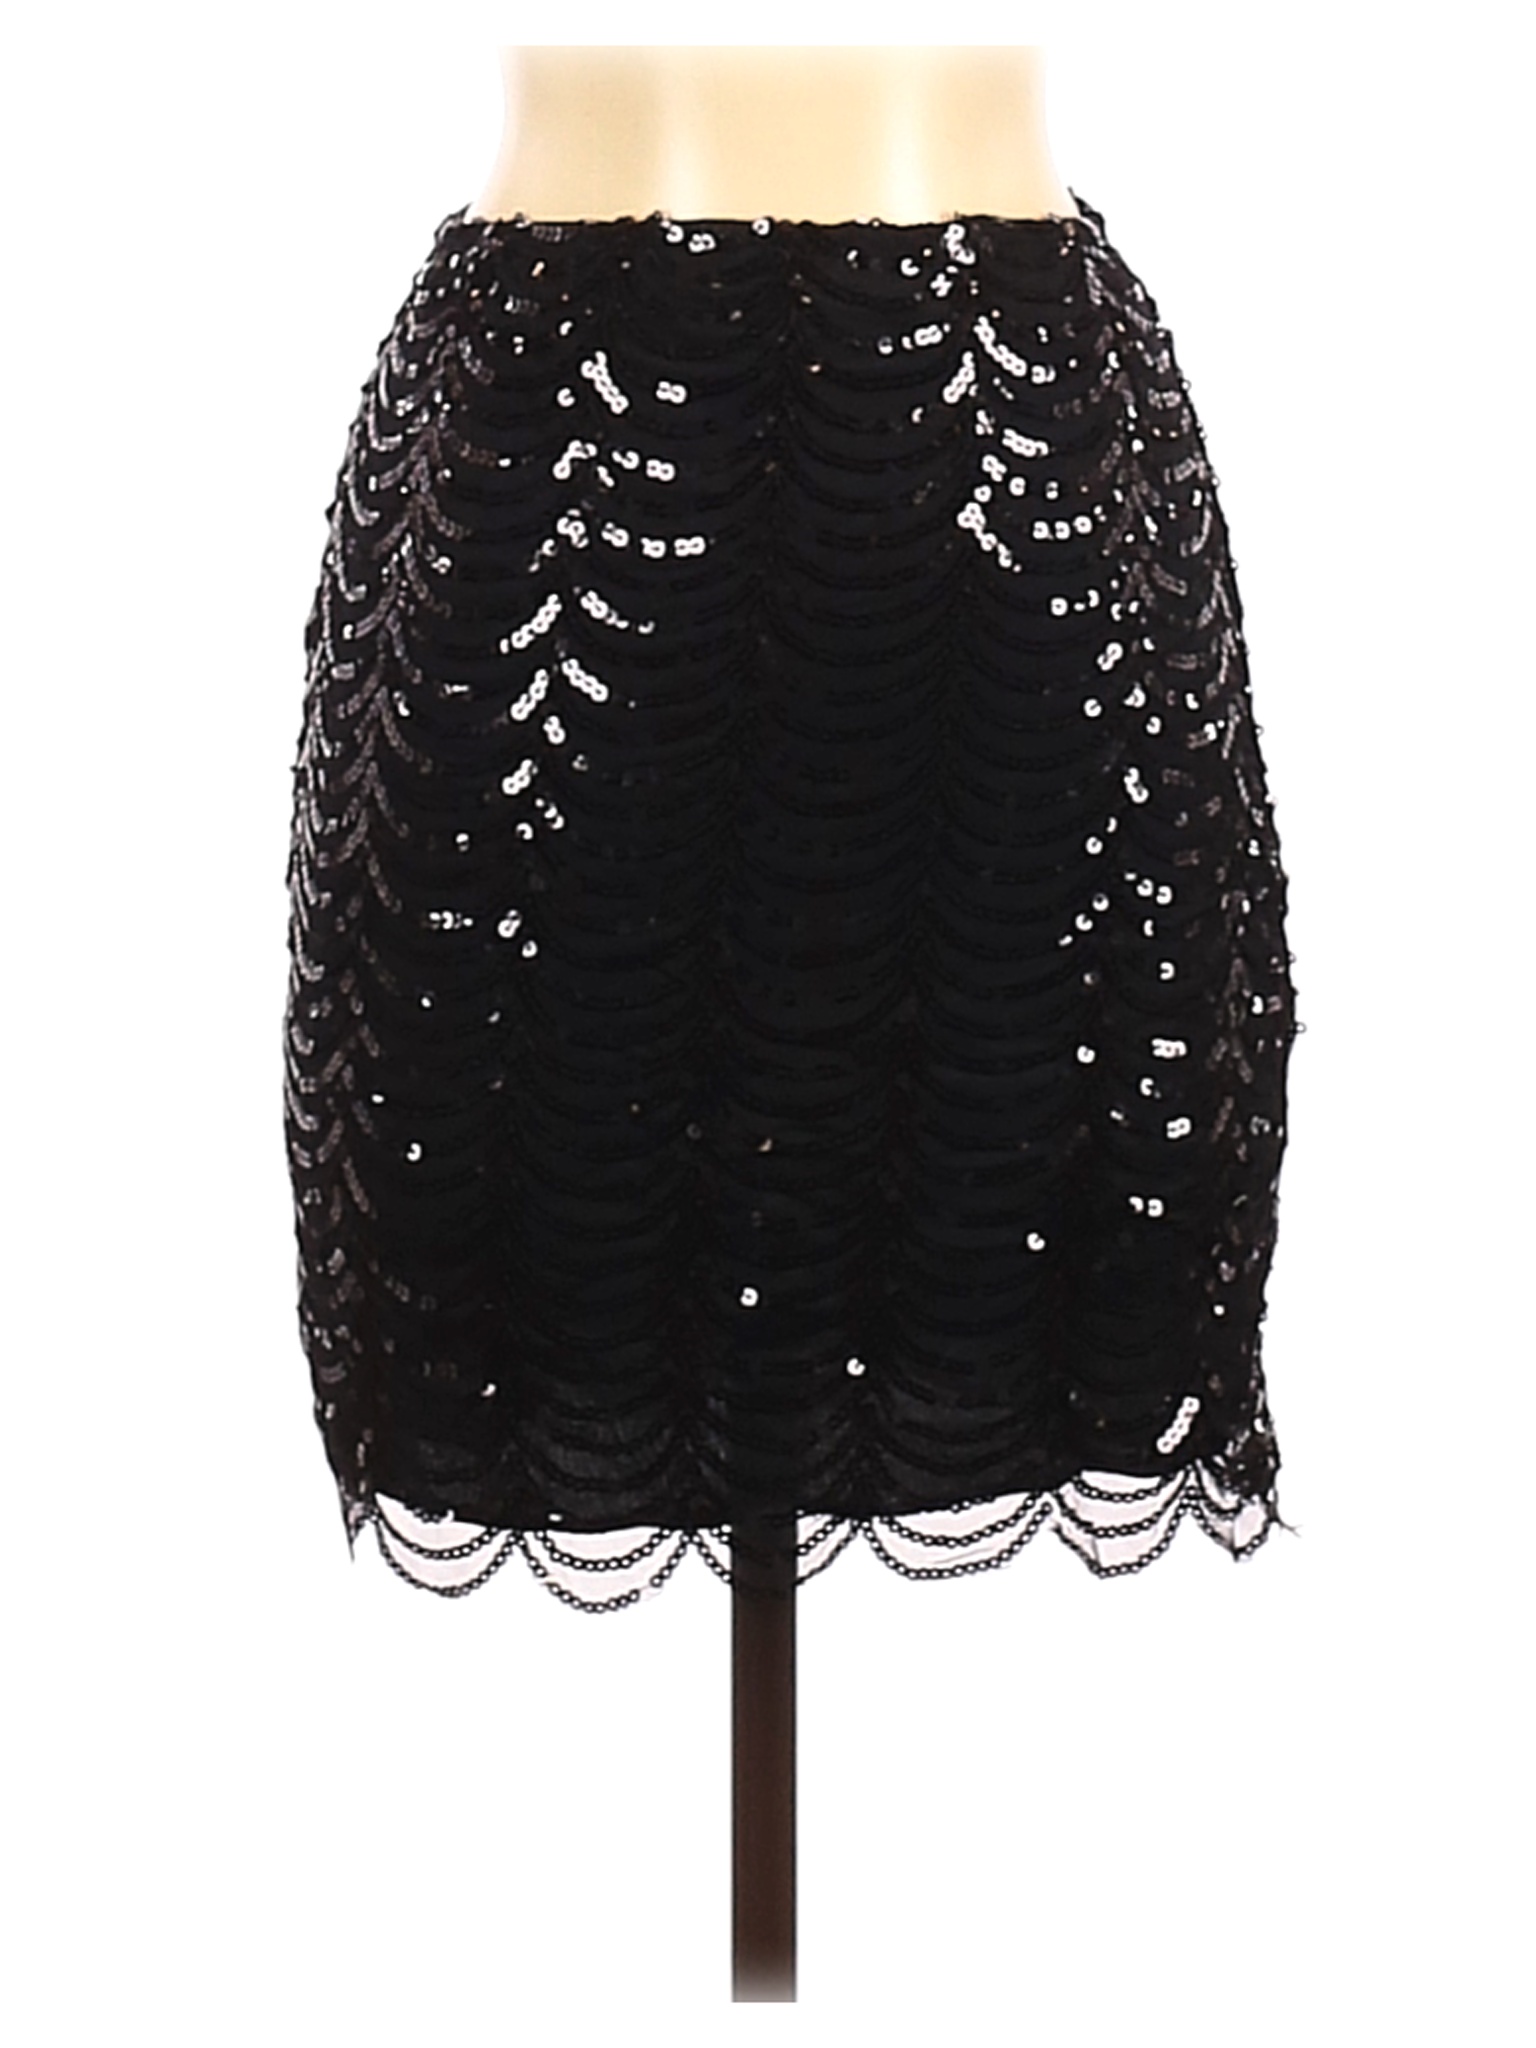 Unbranded Women Black Formal Skirt S | eBay